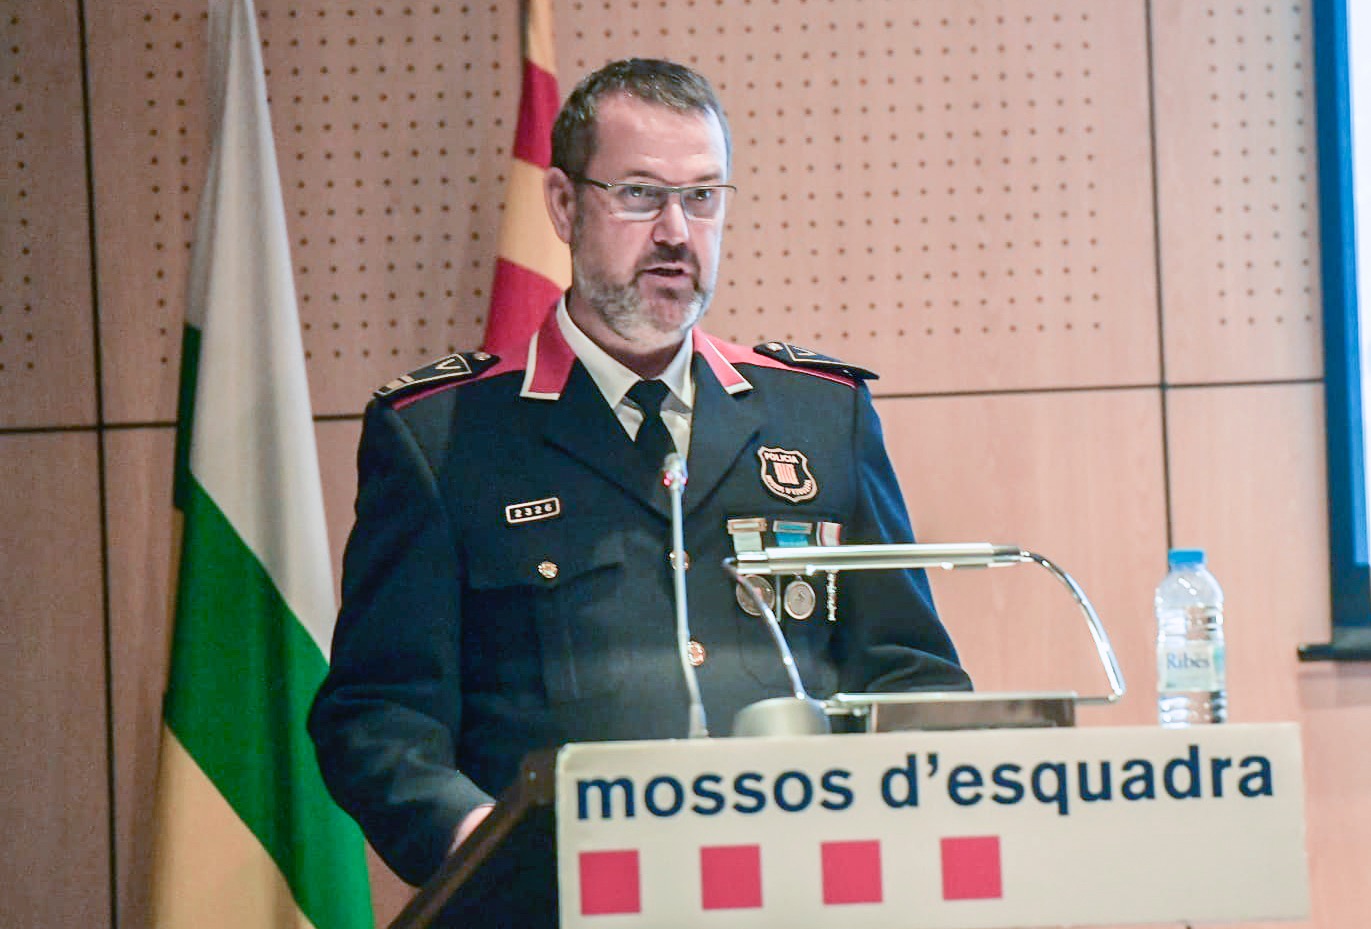 El Mosso d'Esquadra Enric Cervelló, cap de l'ABP de Sabadell / LLUÍS FRANCO